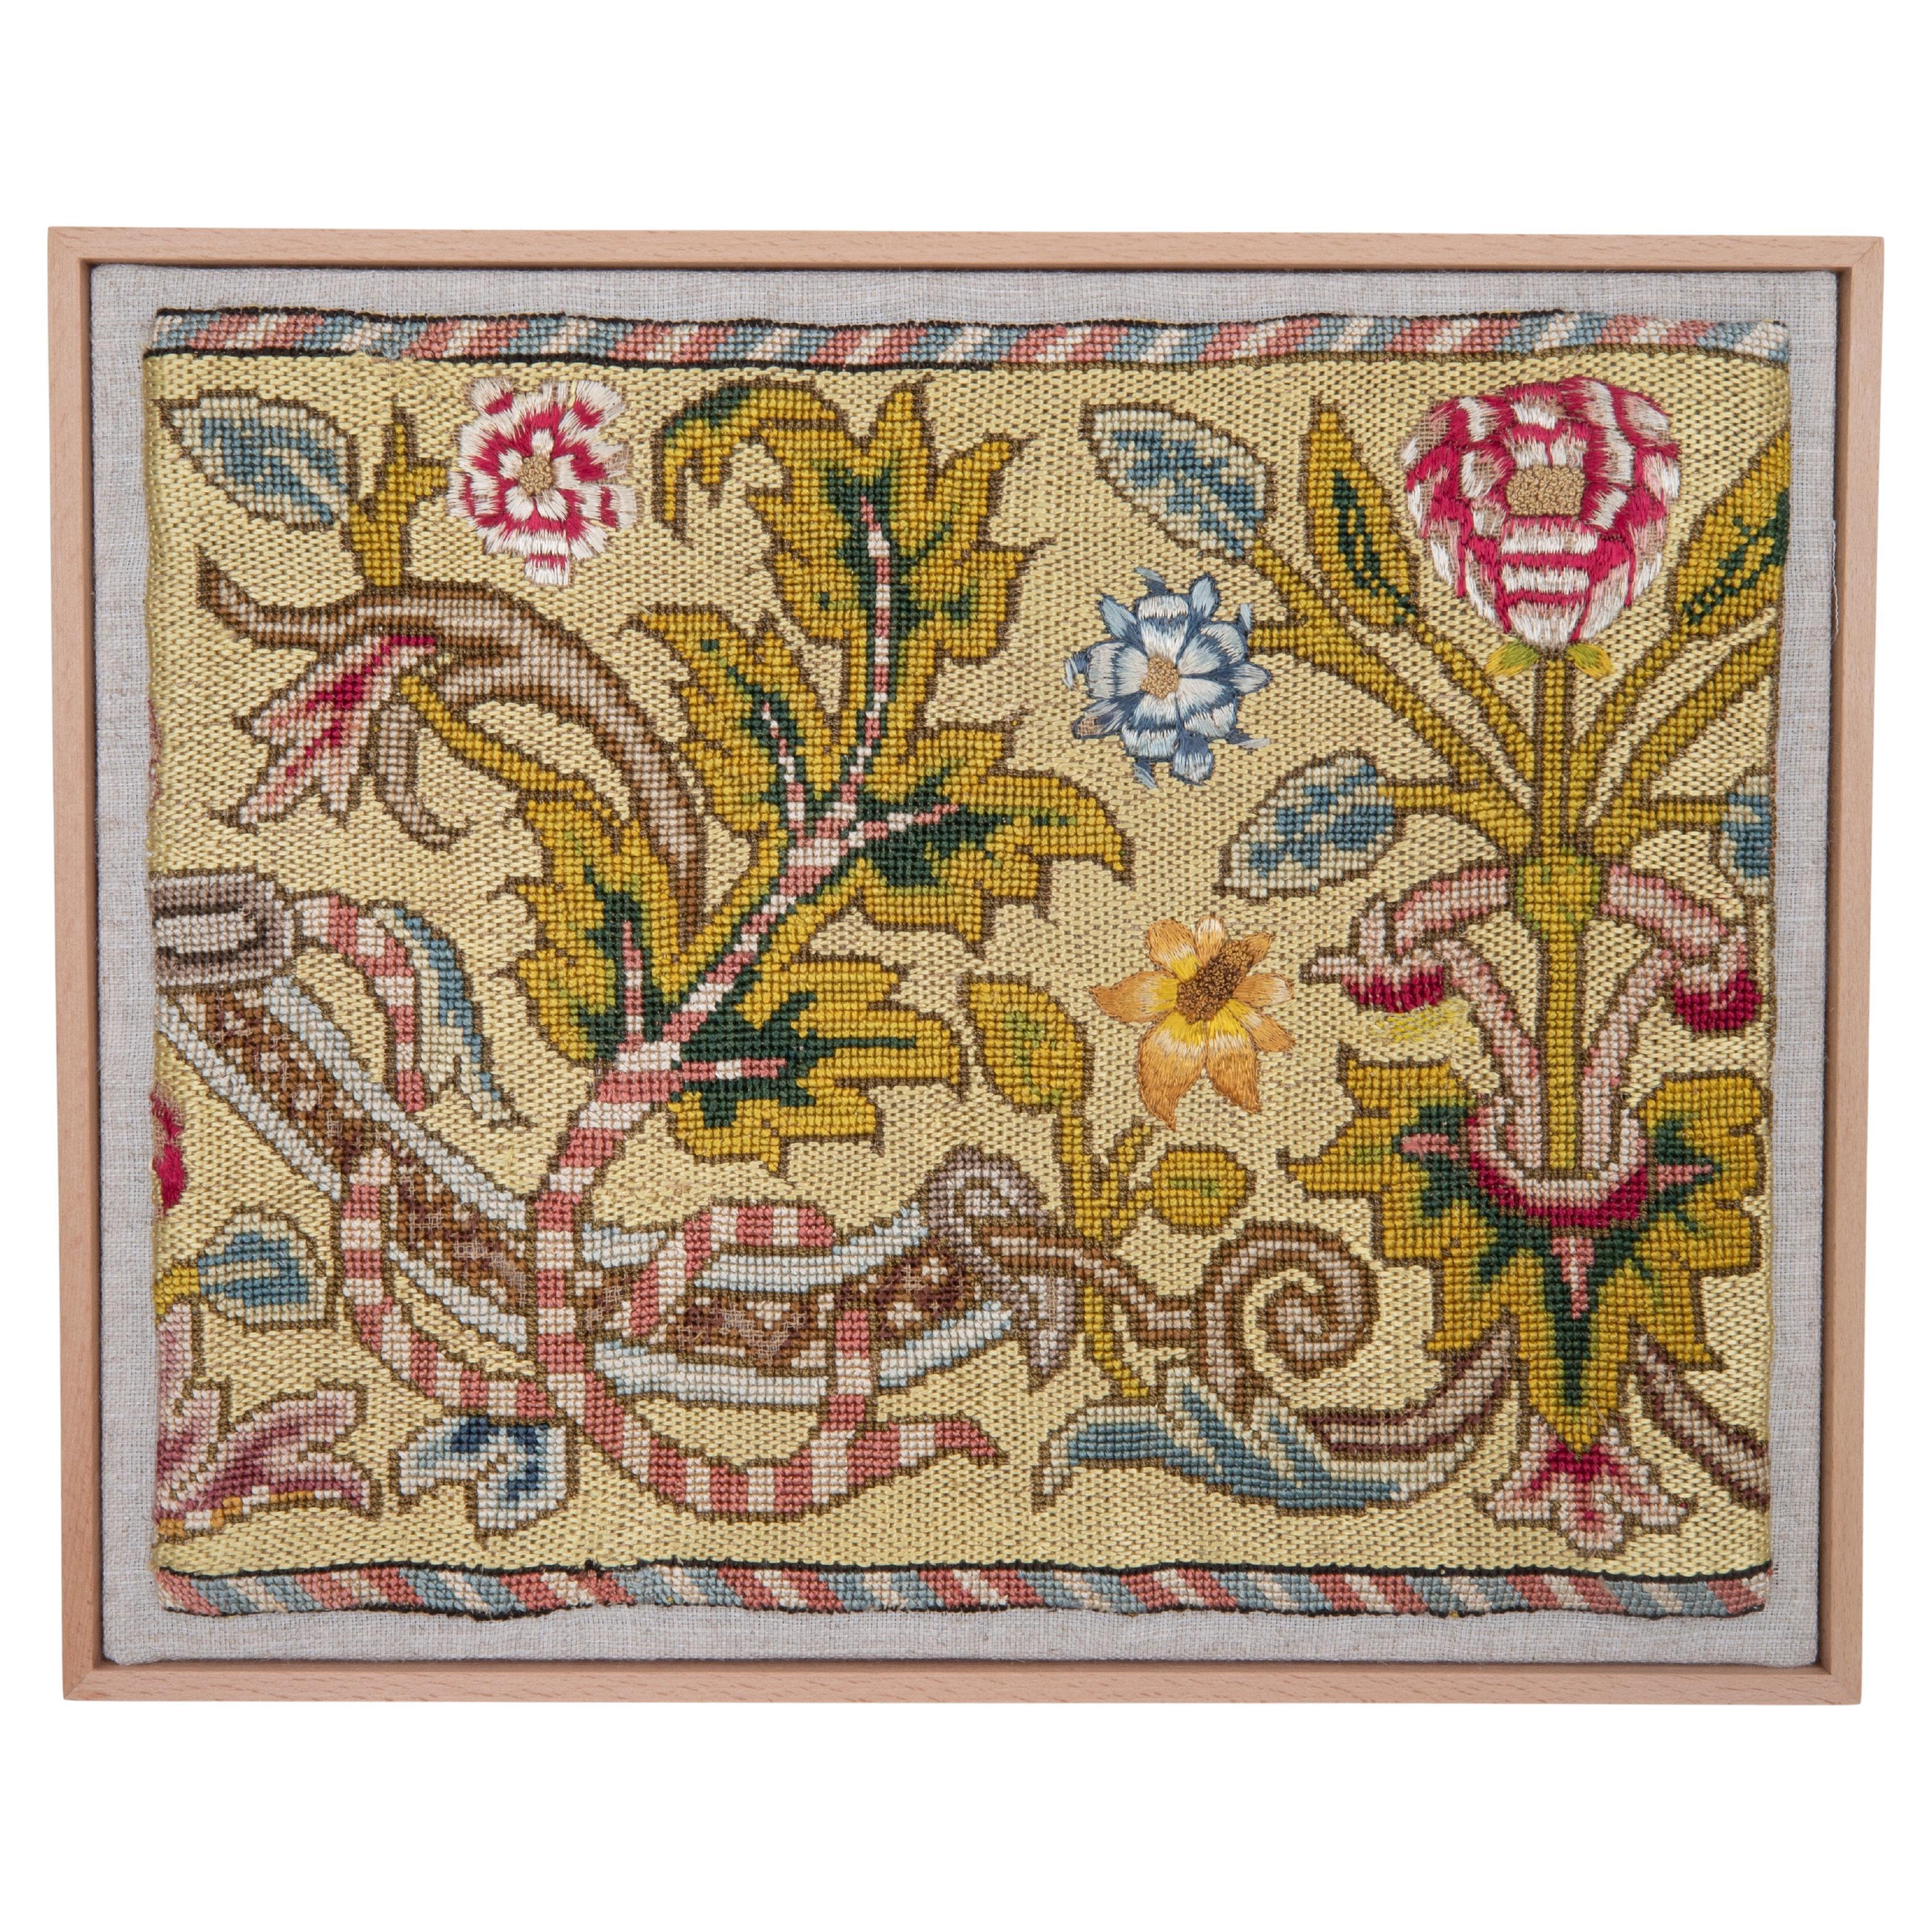 Gerahmtes antikes europäisches Stickereifragment, 19. Jahrhundert oder früher.